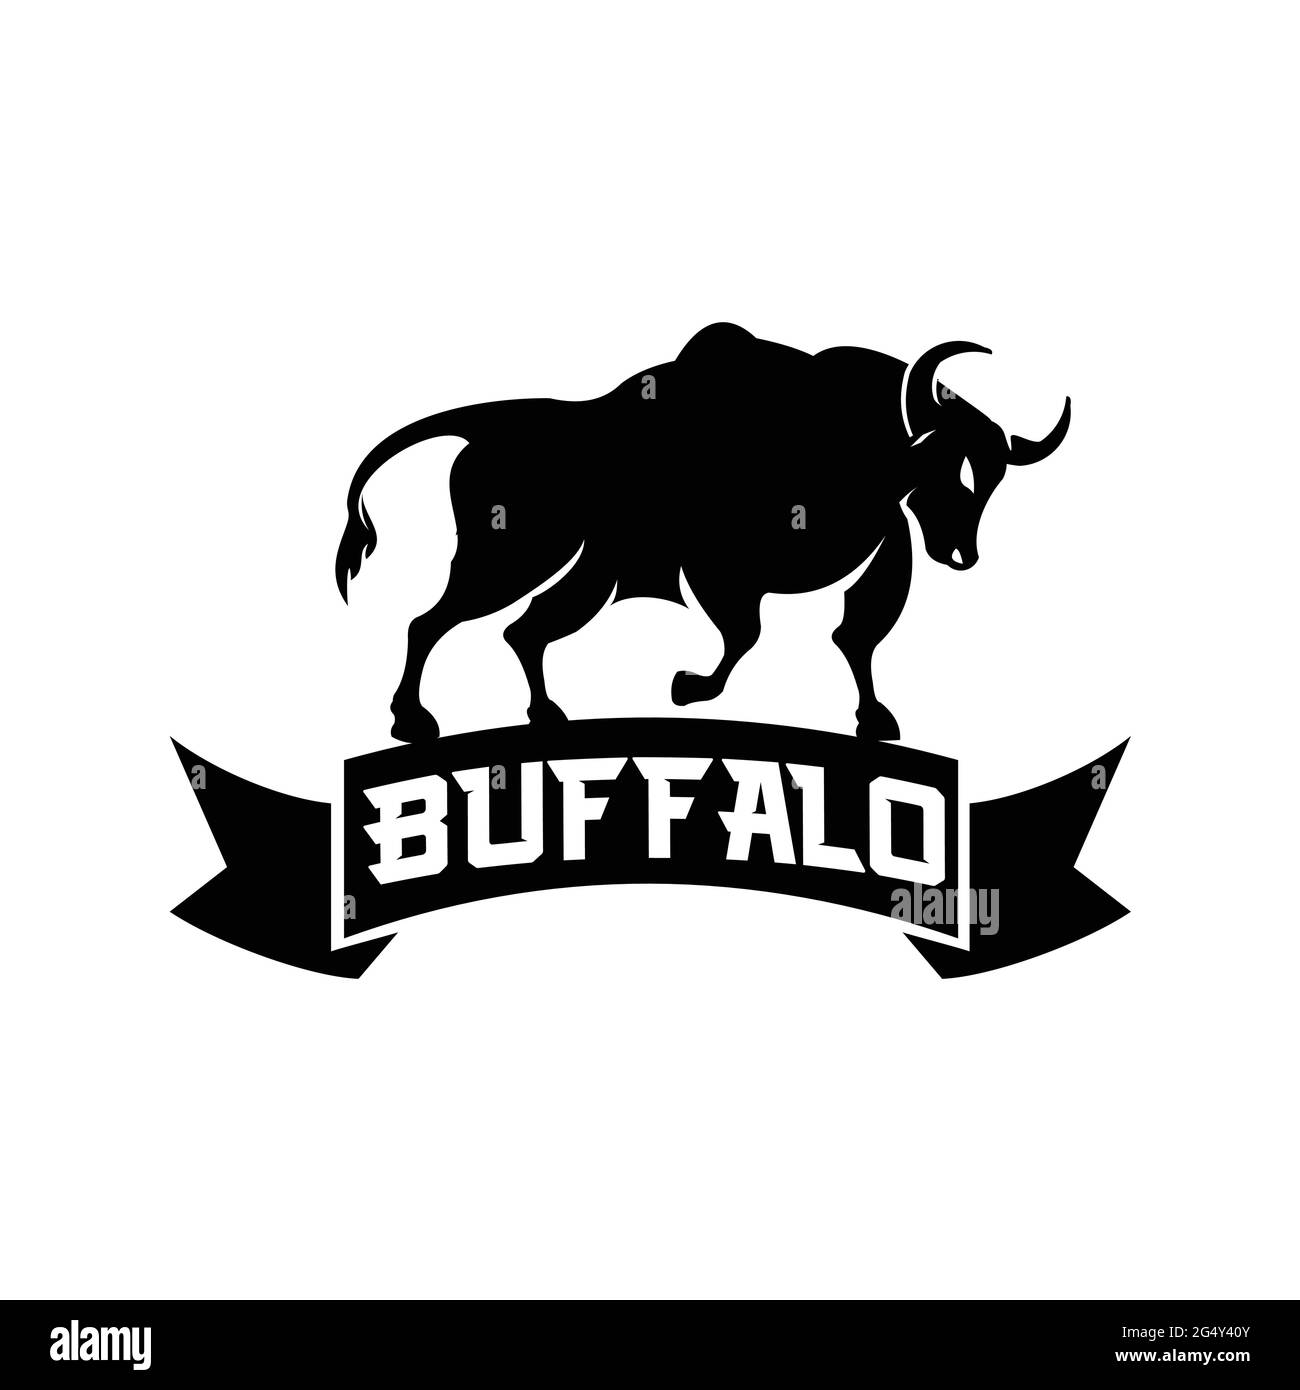 buffalo logo exclusive design inspiration Stock Vector